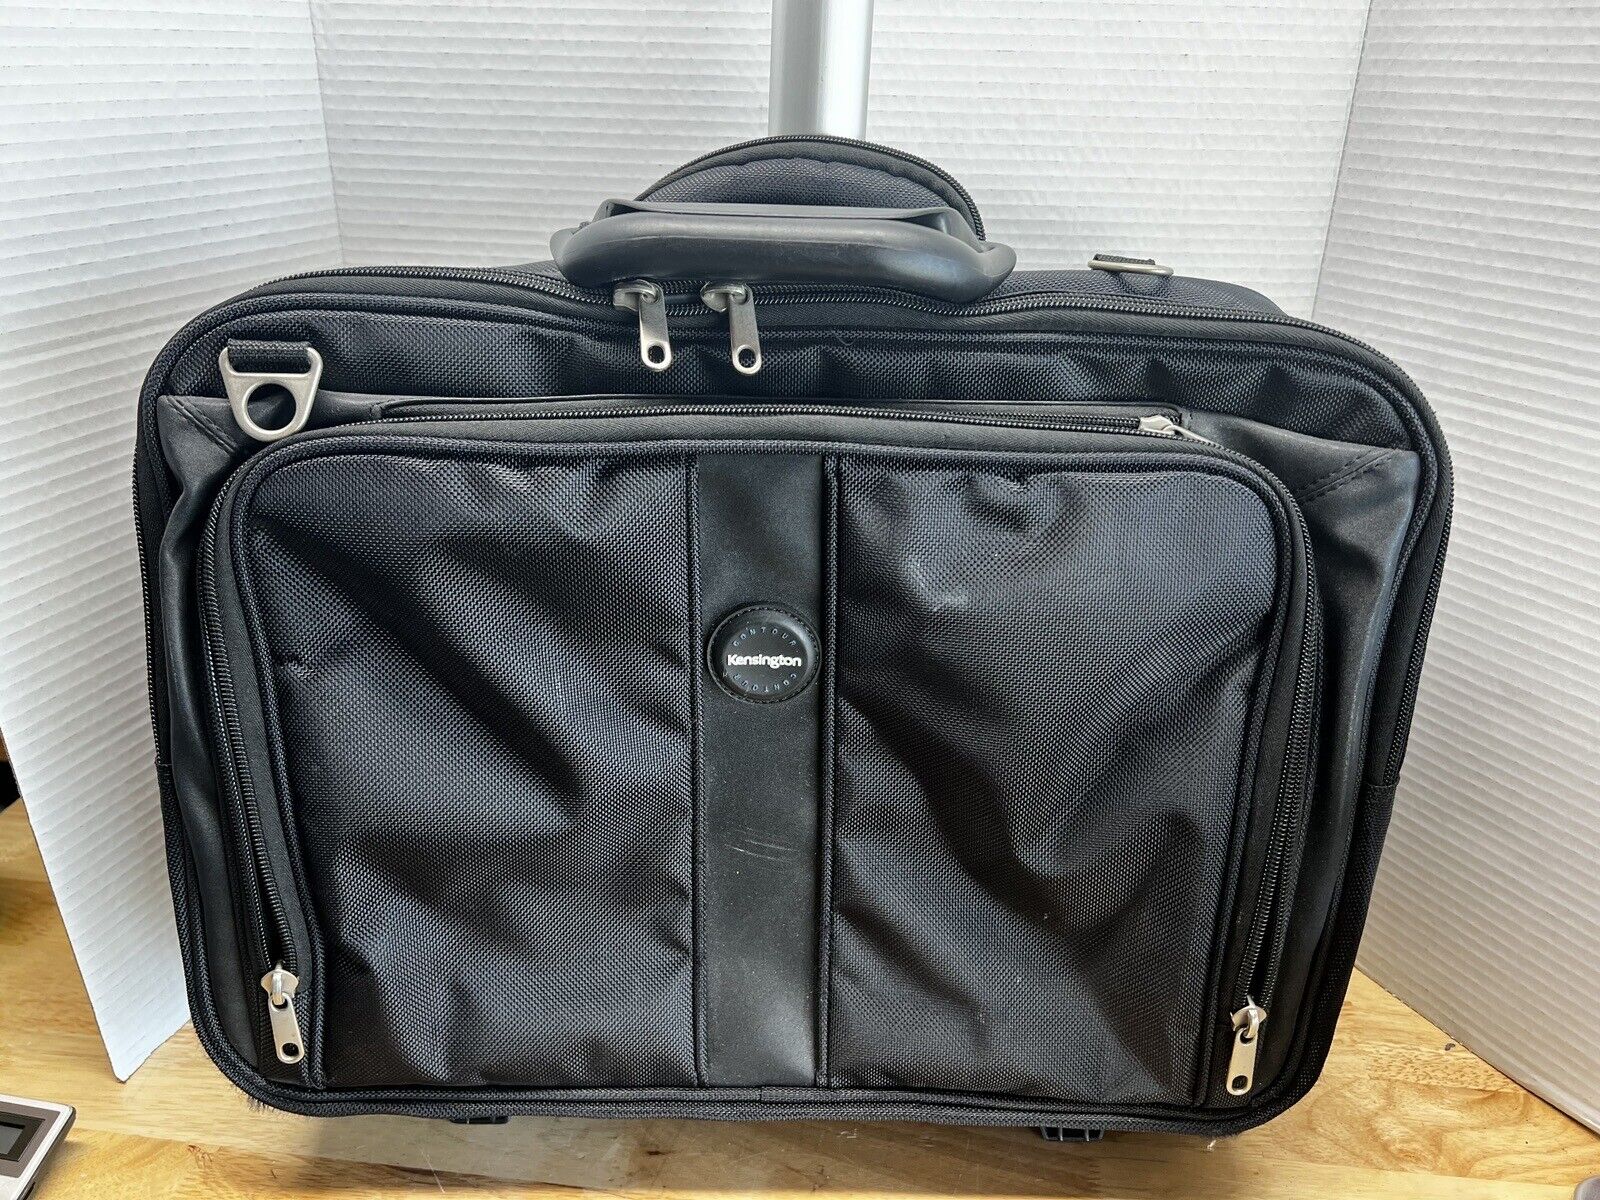 Kensington Contour Laptop Roller Bag good condition takes 17 inch laptop[B]